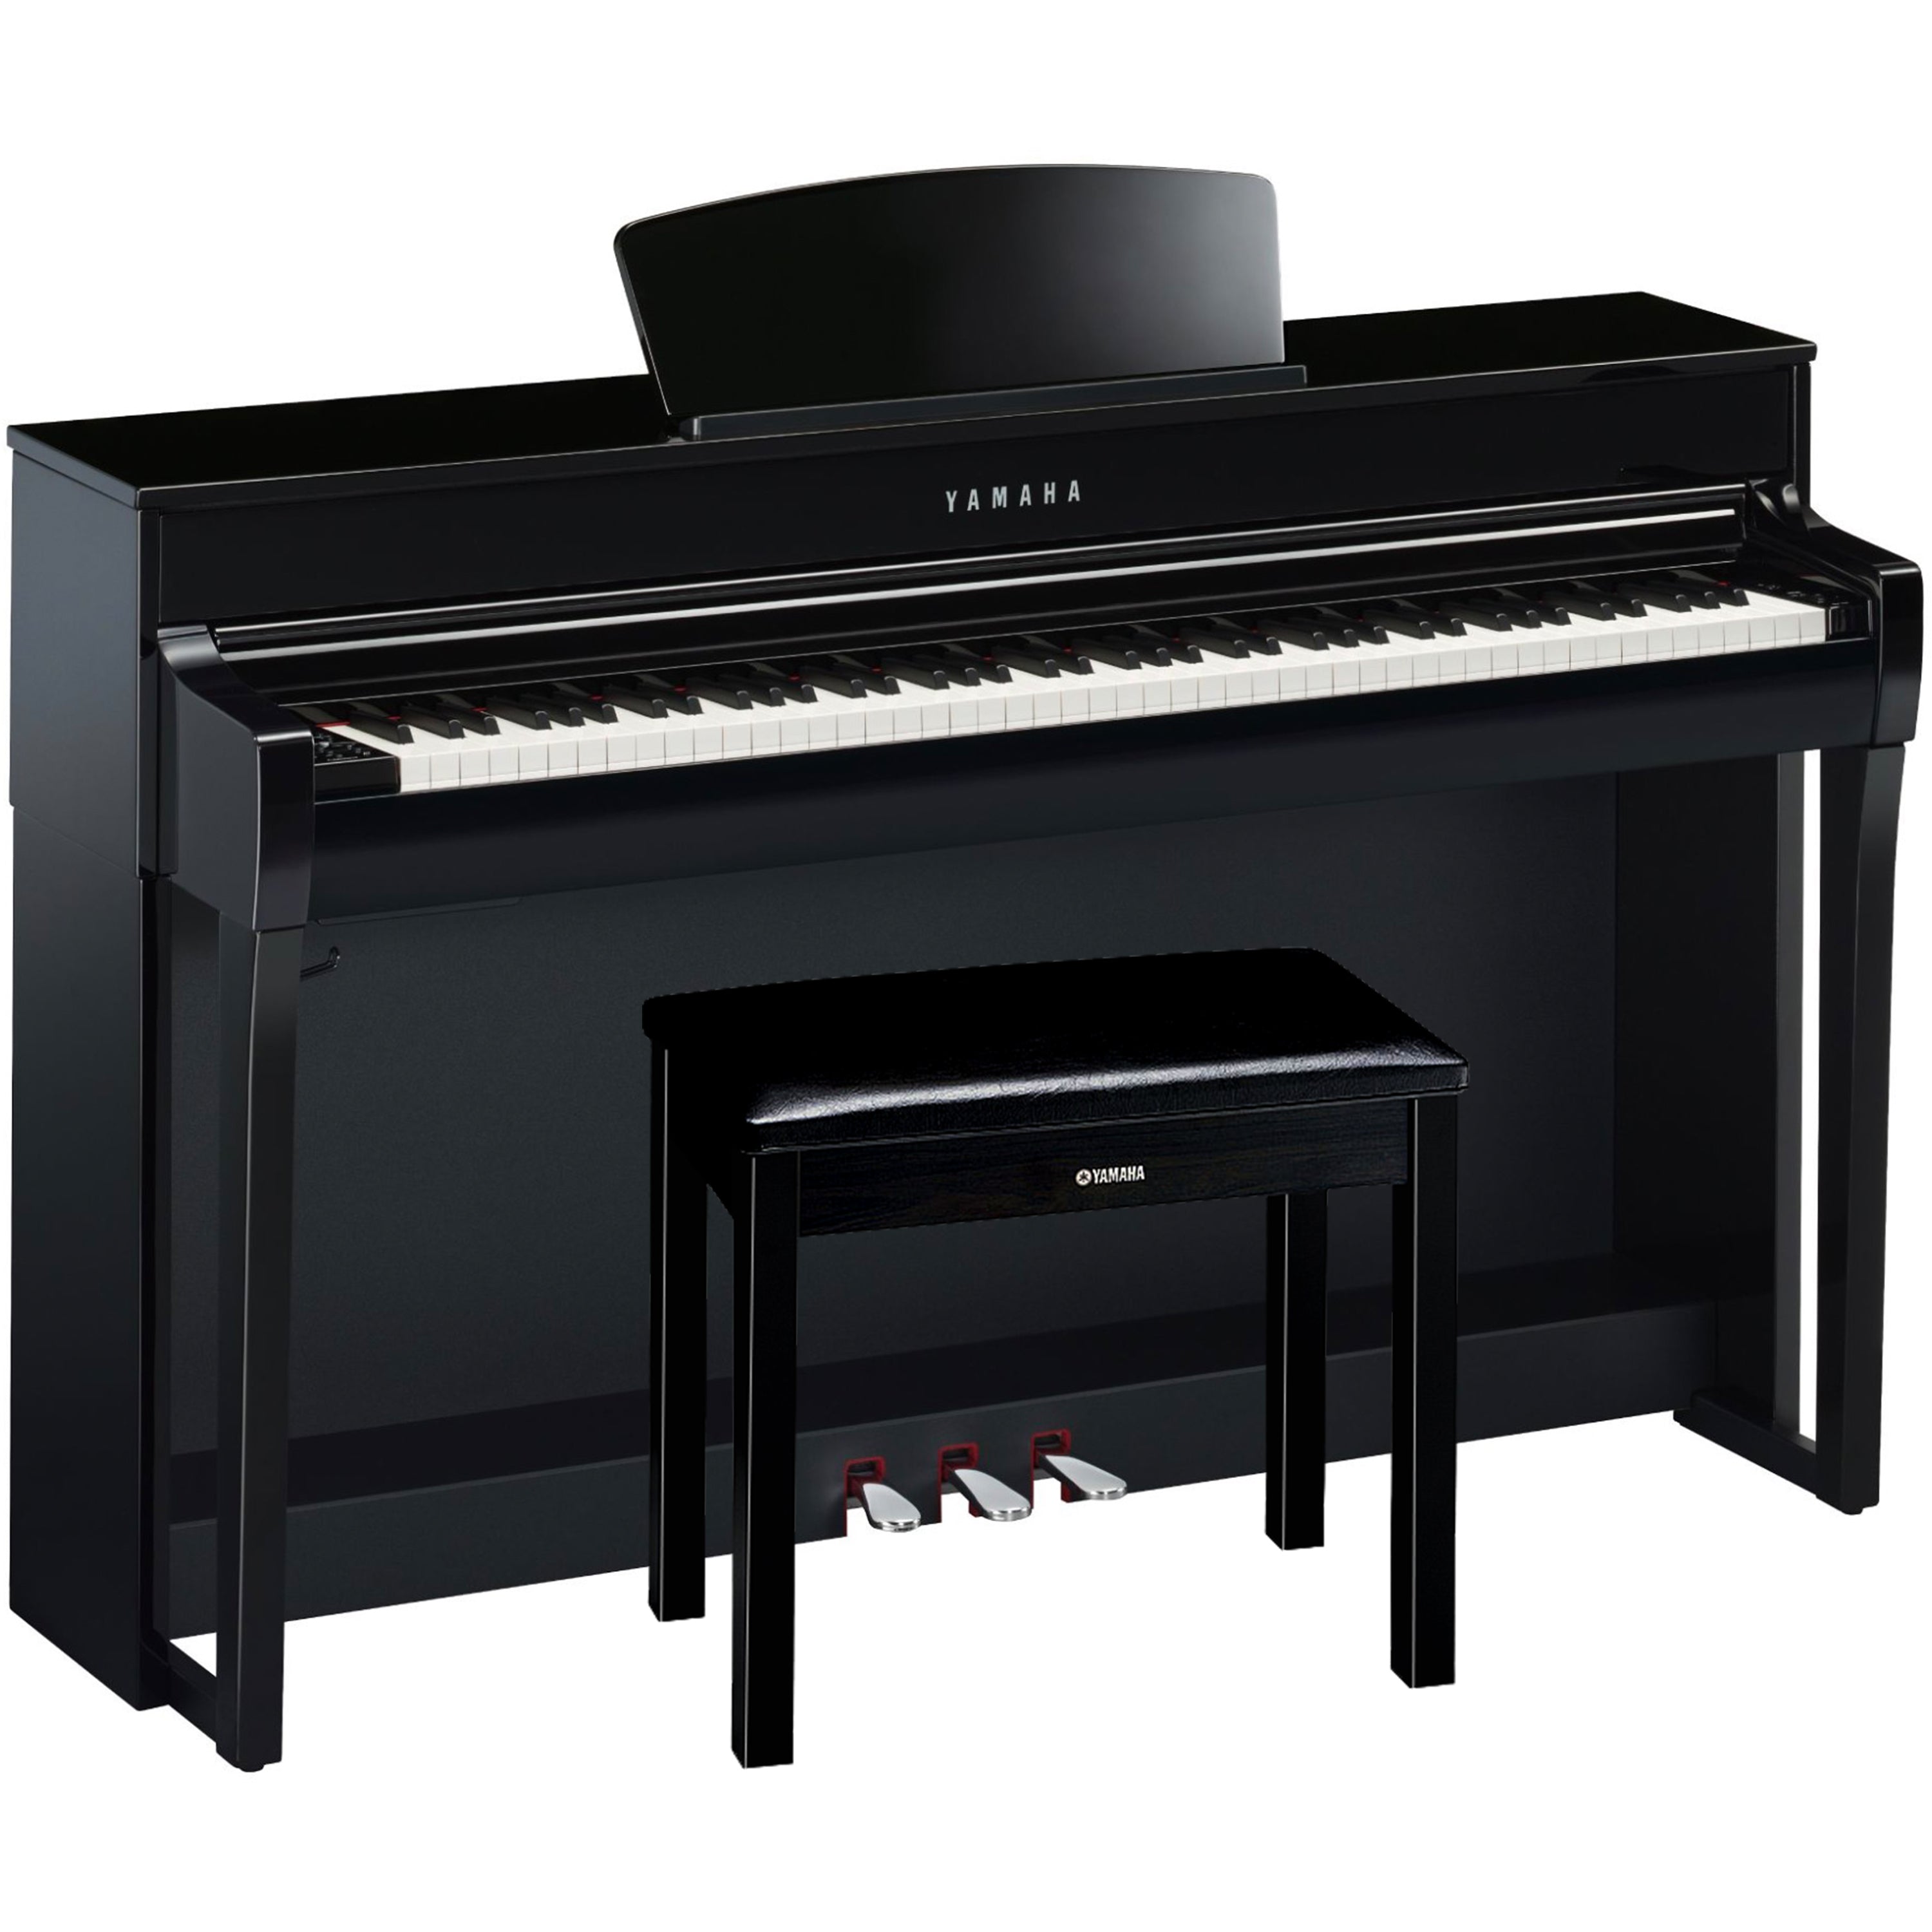 Yamaha Clavinova CLP-735 Digital Piano - Polished Ebony - with bench